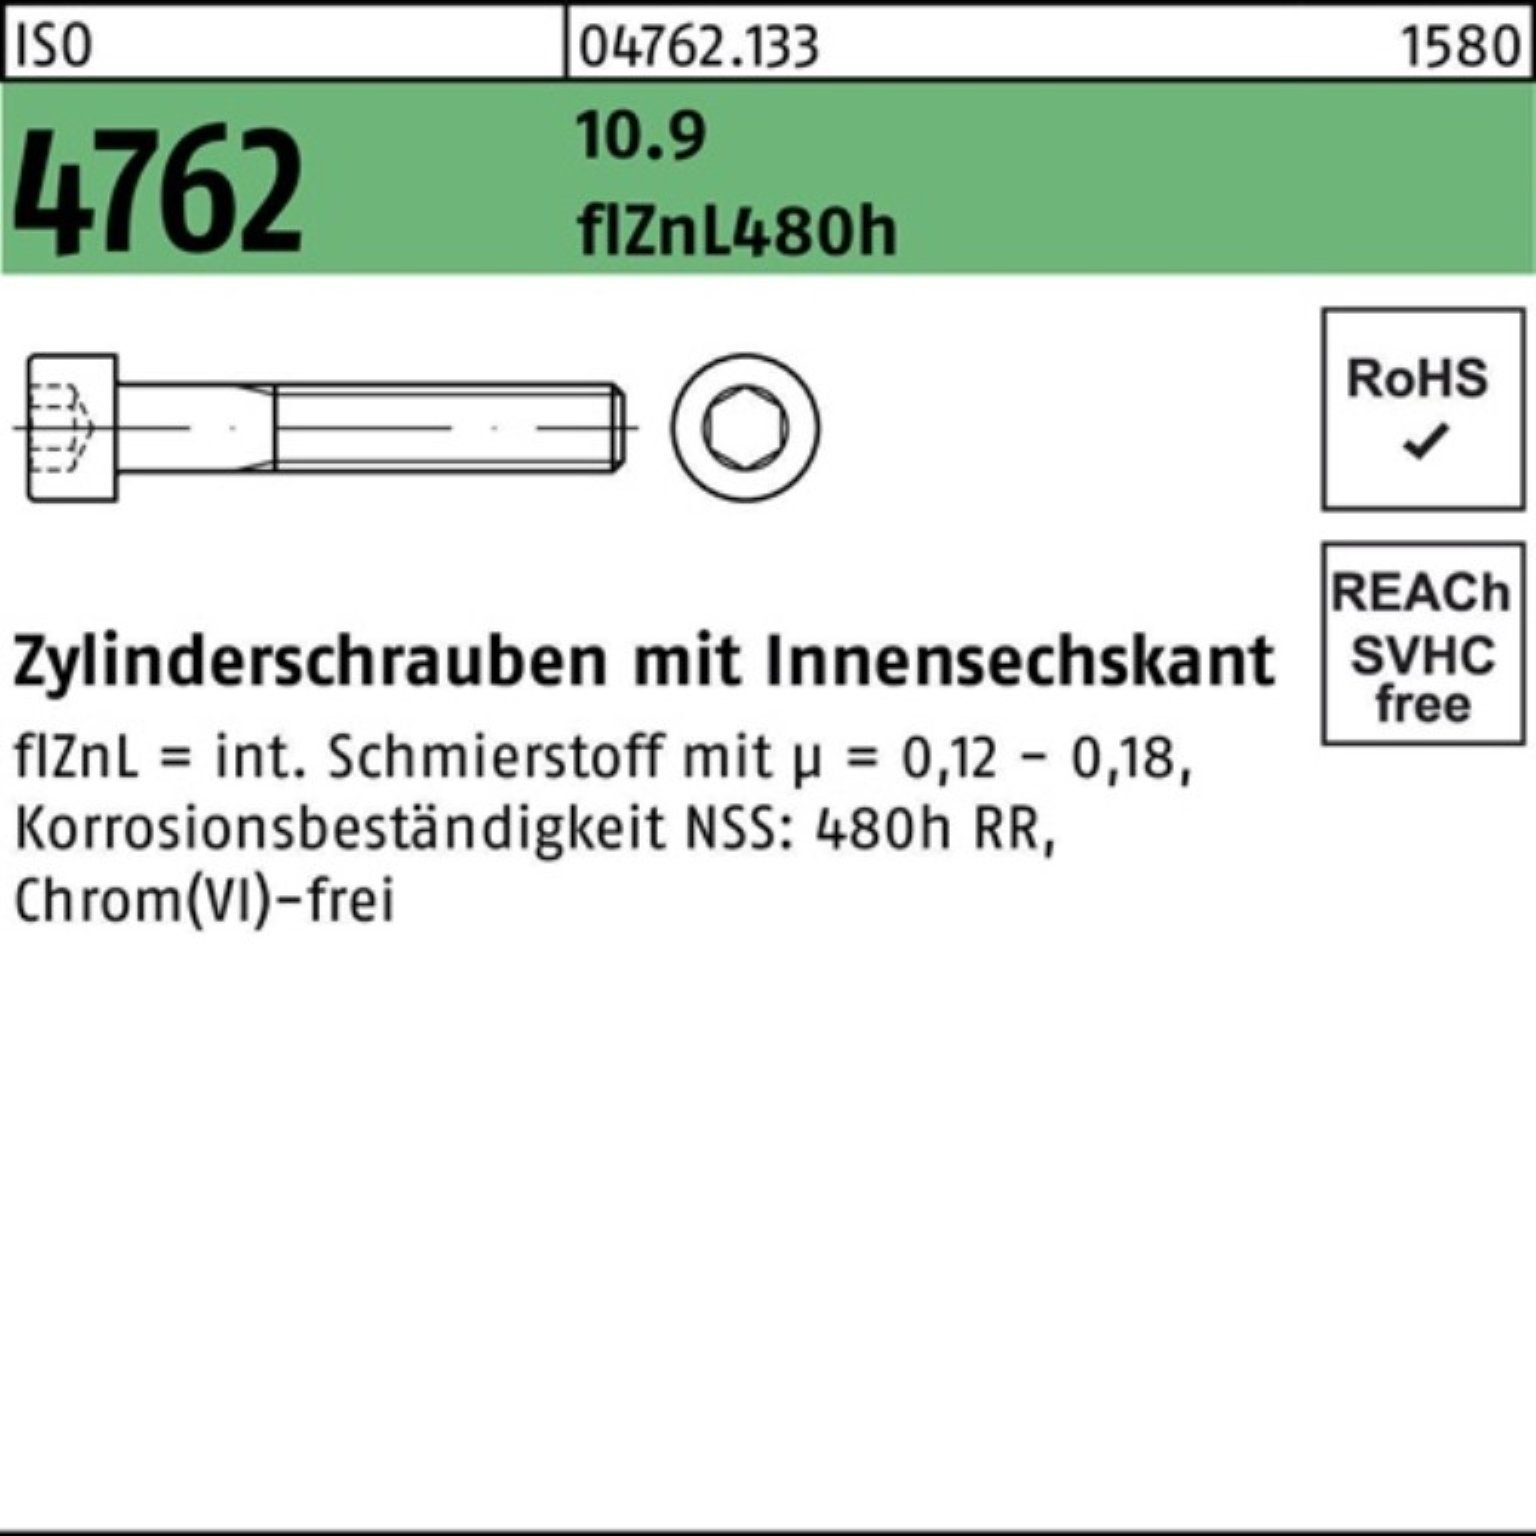 ISO 100er Reyher Innen-6kt Zylinderschraube M20x100 4762 zinklamell 10.9 Pack Zylinderschraube